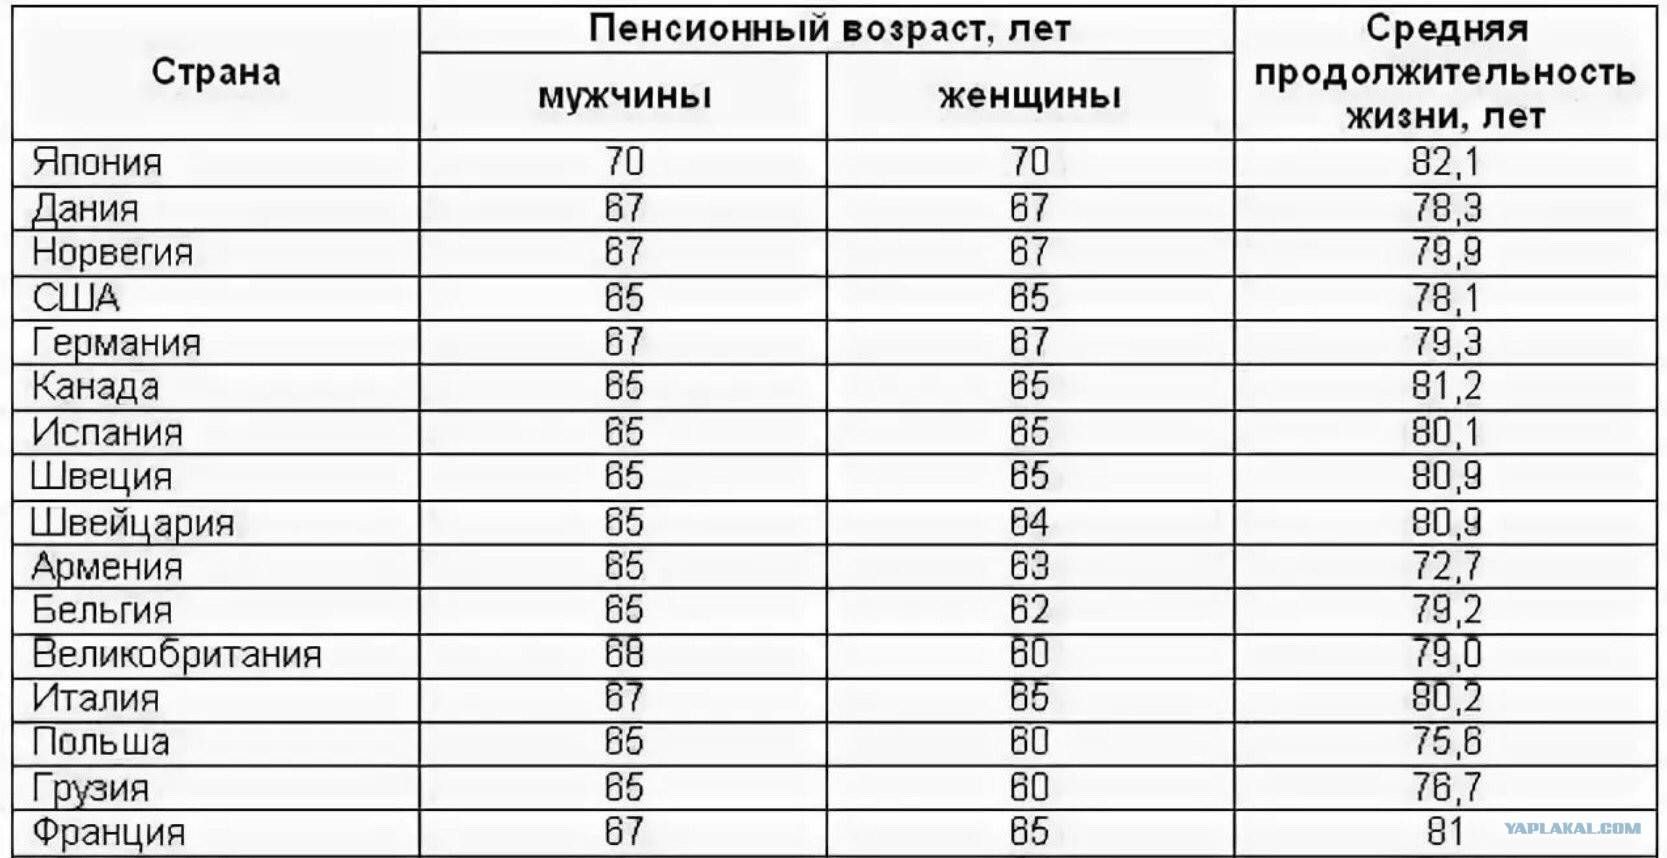 Кому в украине платят не просто большие, а огромные пенсии?